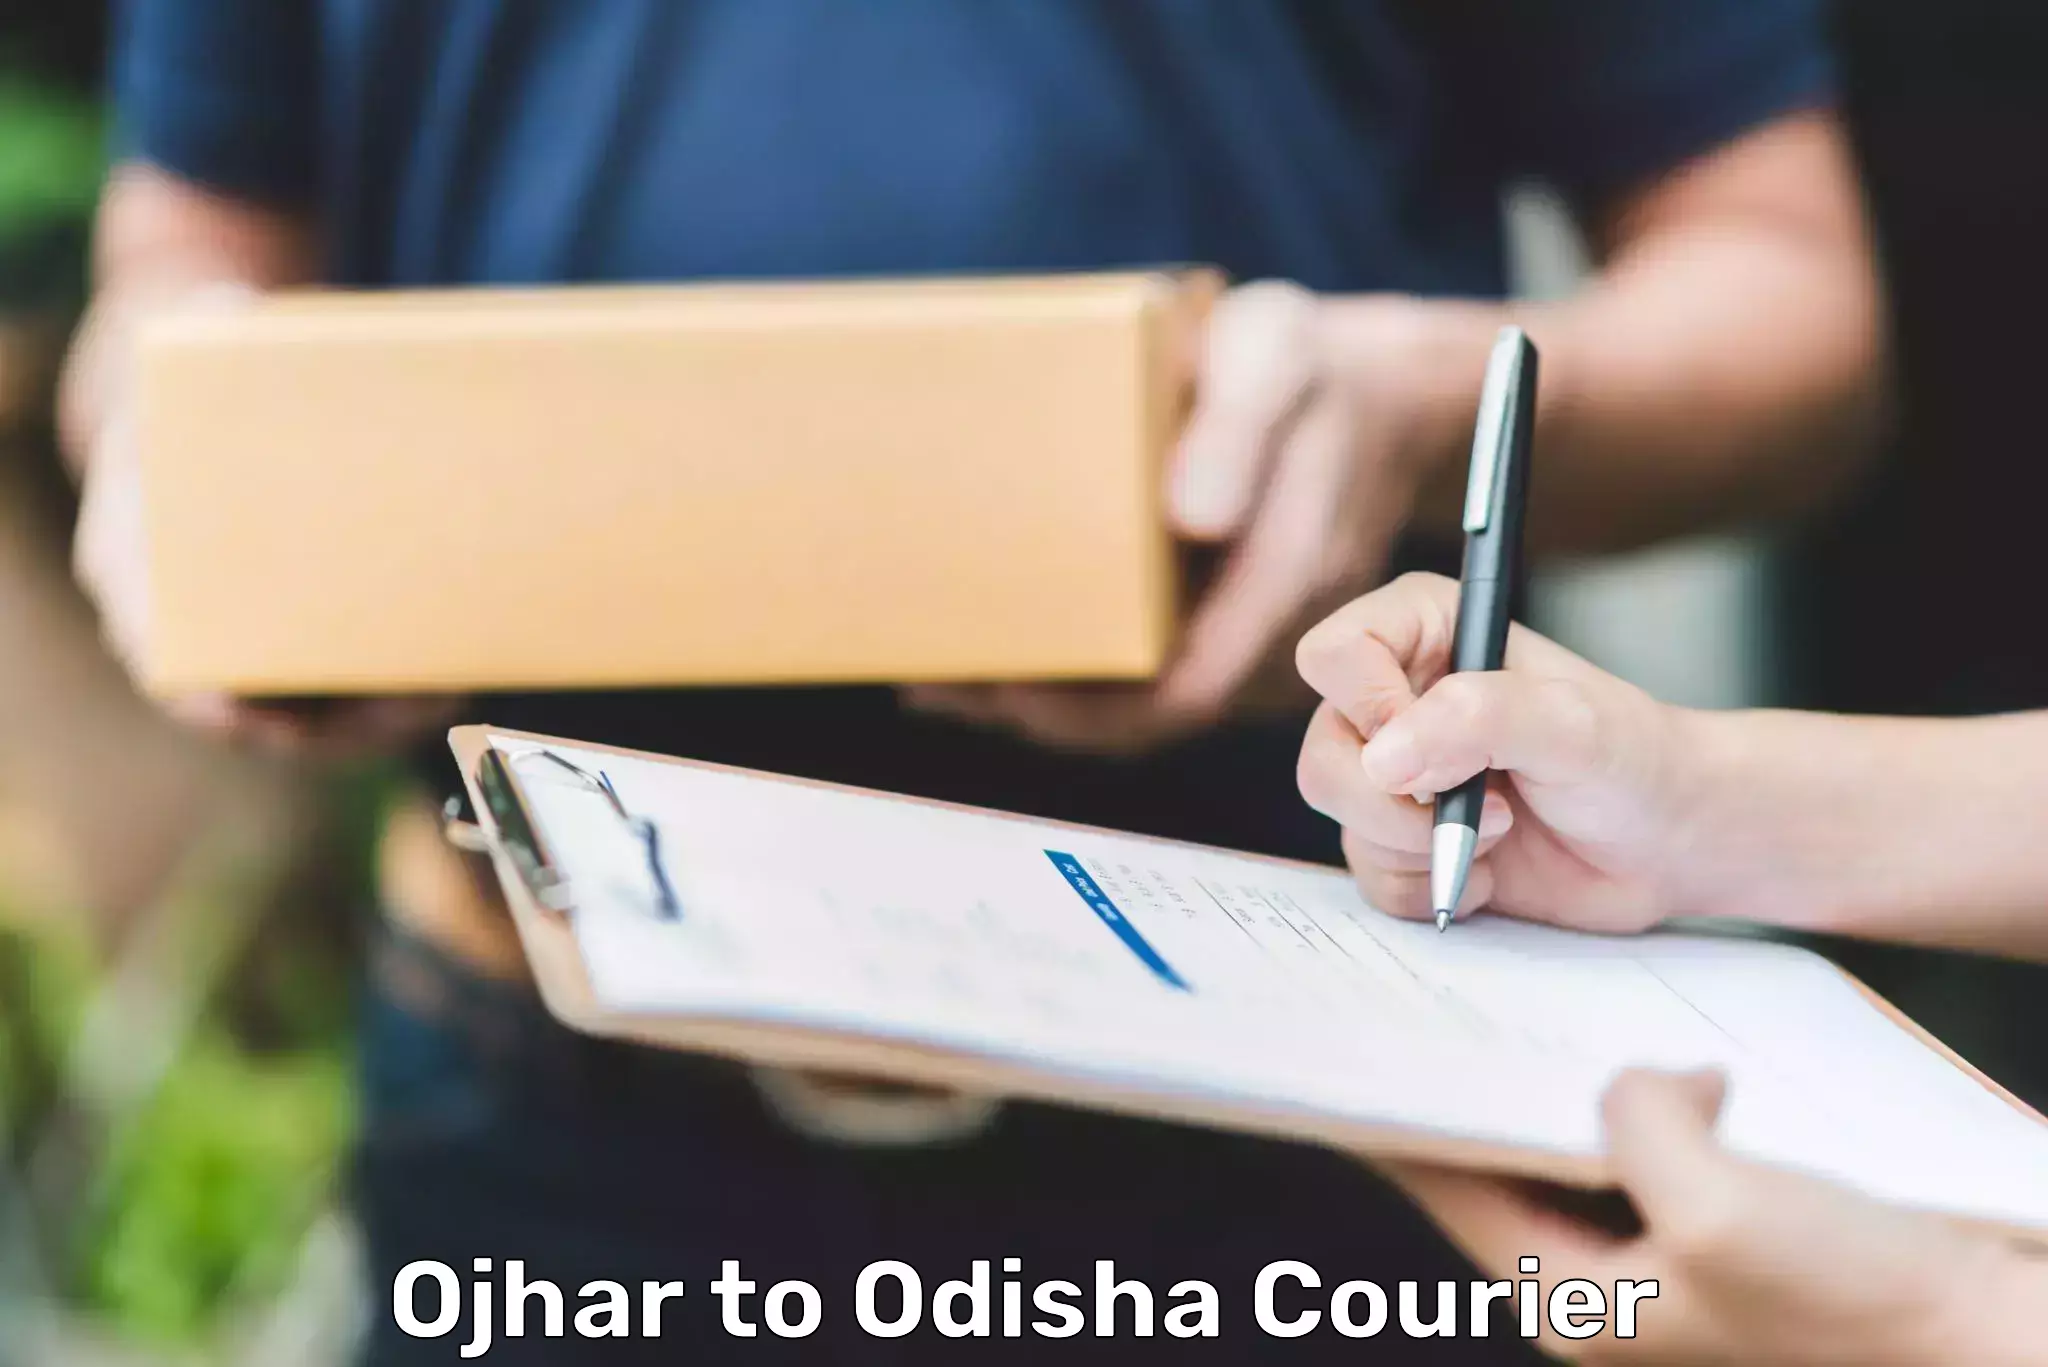 E-commerce fulfillment Ojhar to Loisingha